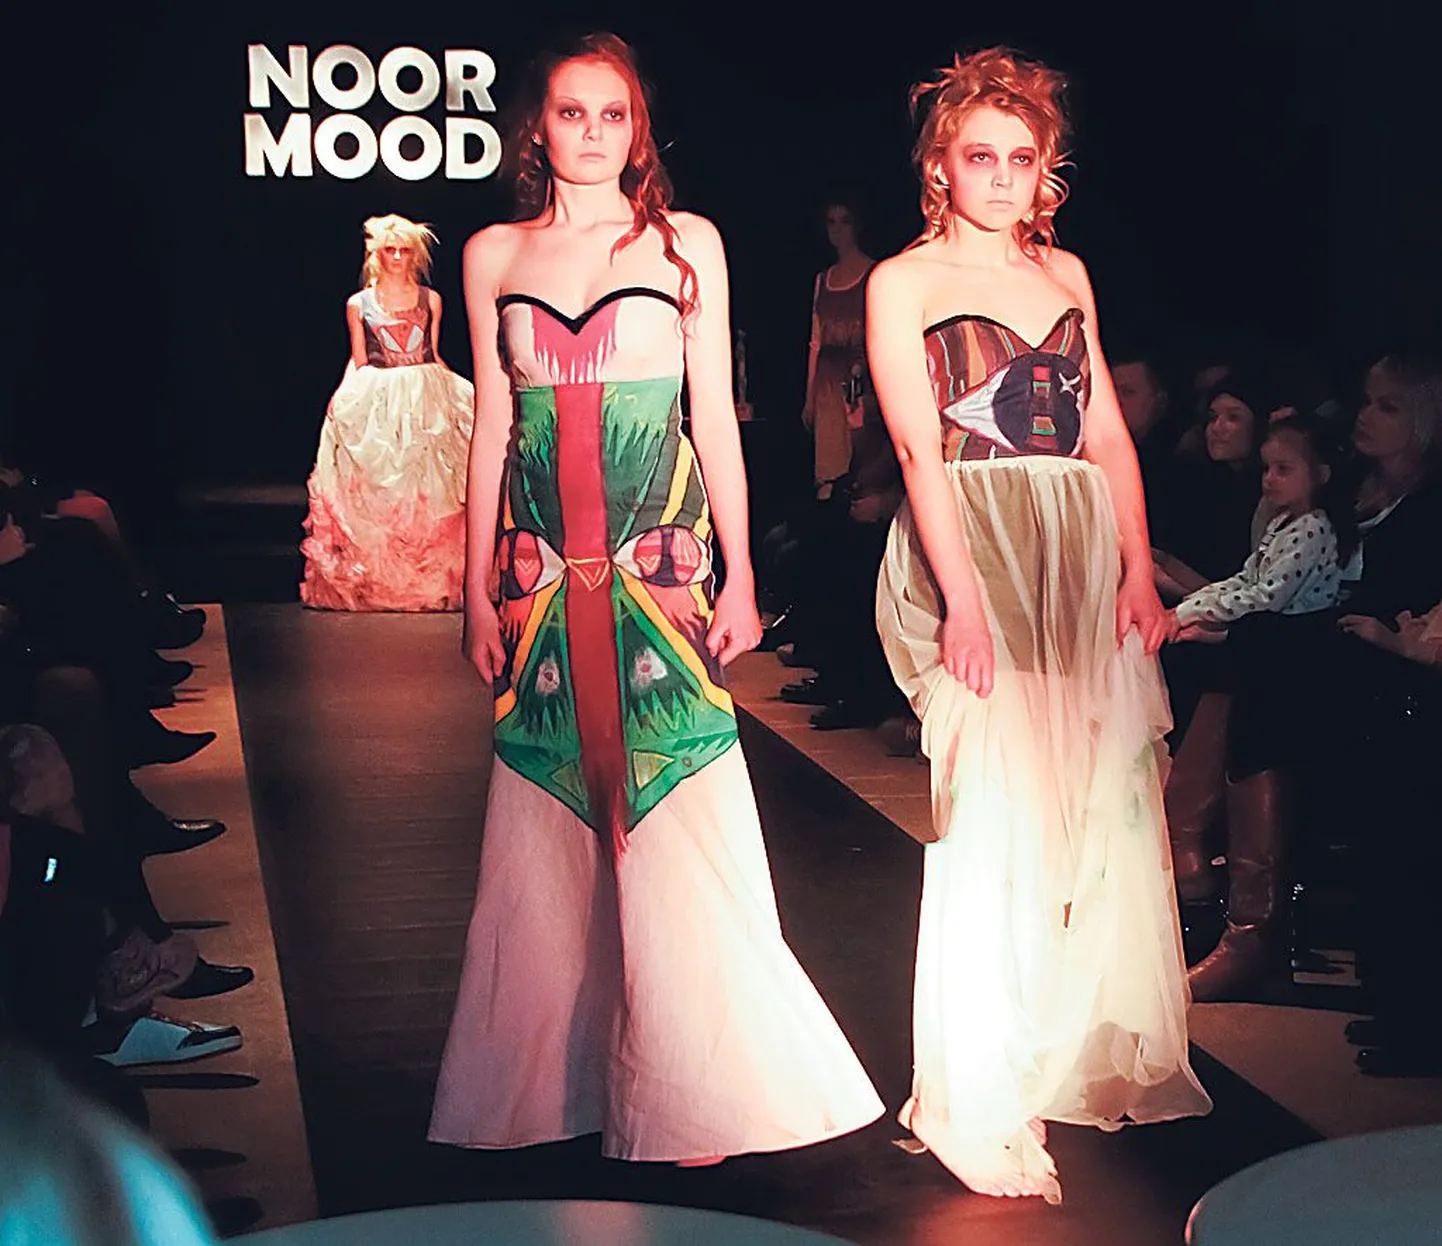 Konkursil “NoorMood” näeb nii praktilist kui fantaasiaküllast disaini, mida esitlevad algajad modellid.